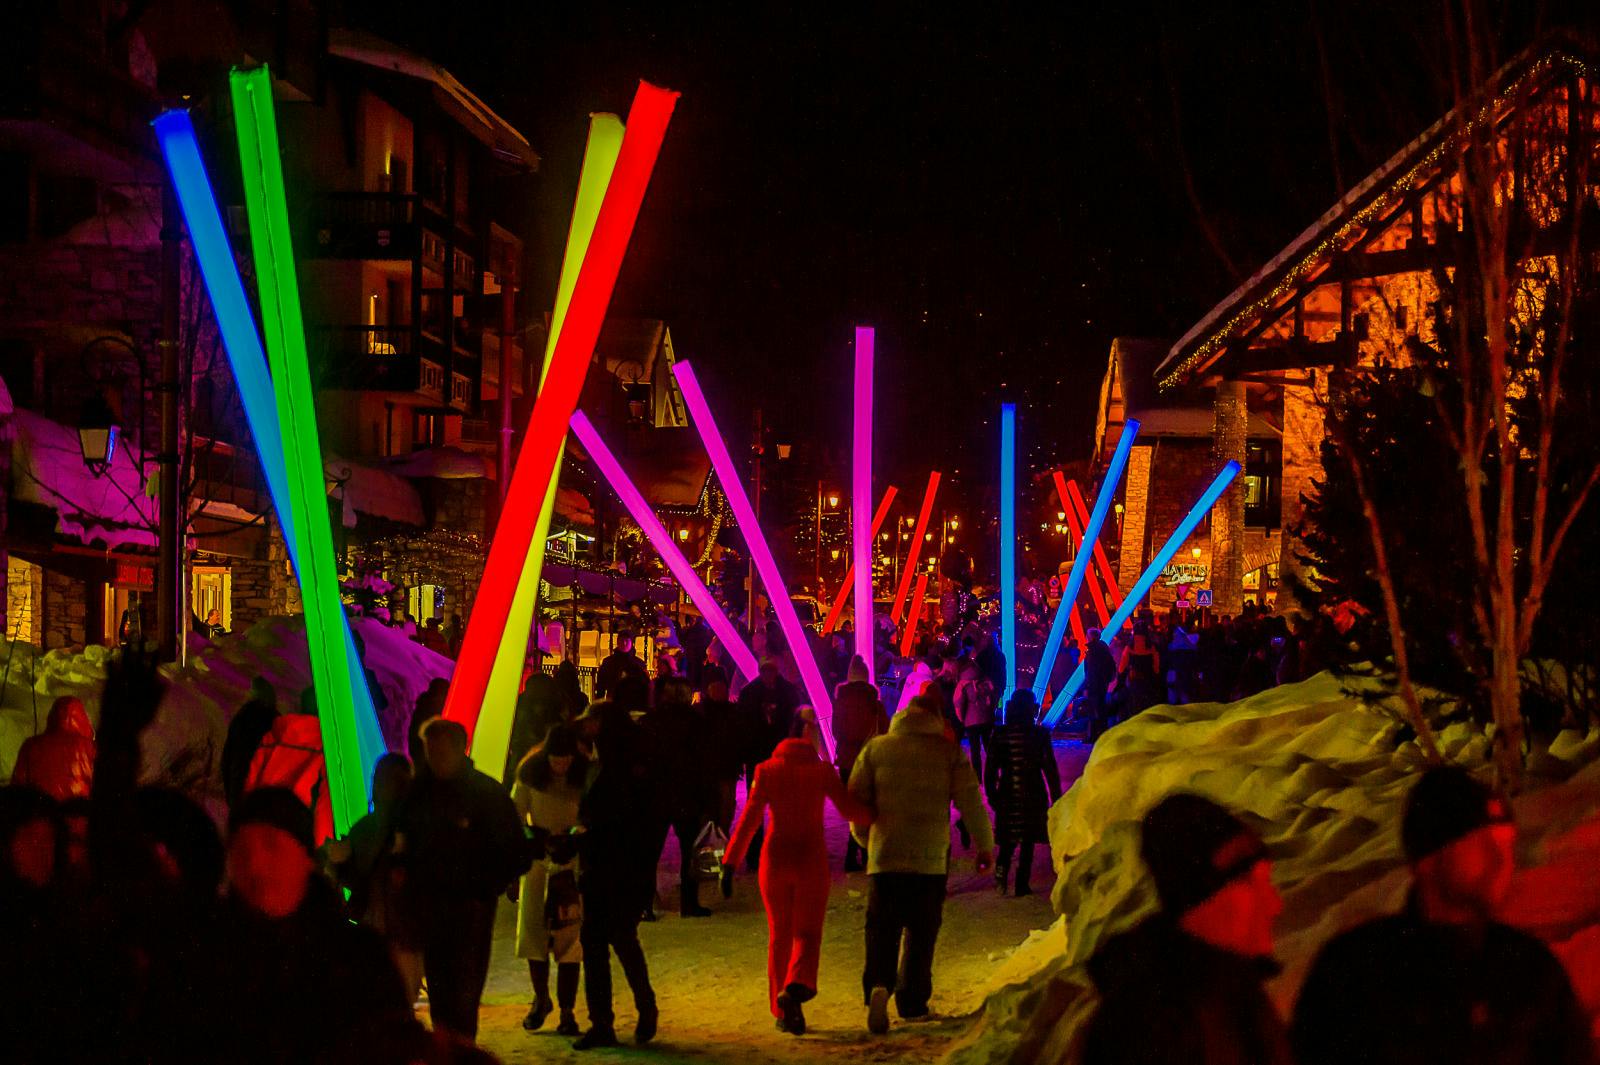 Valotapahtuma Val D’isèressä. Kaupunki täynnä eri värisiä valotikkuja ja ihmiset kävelevät niiden ympäröimänä.